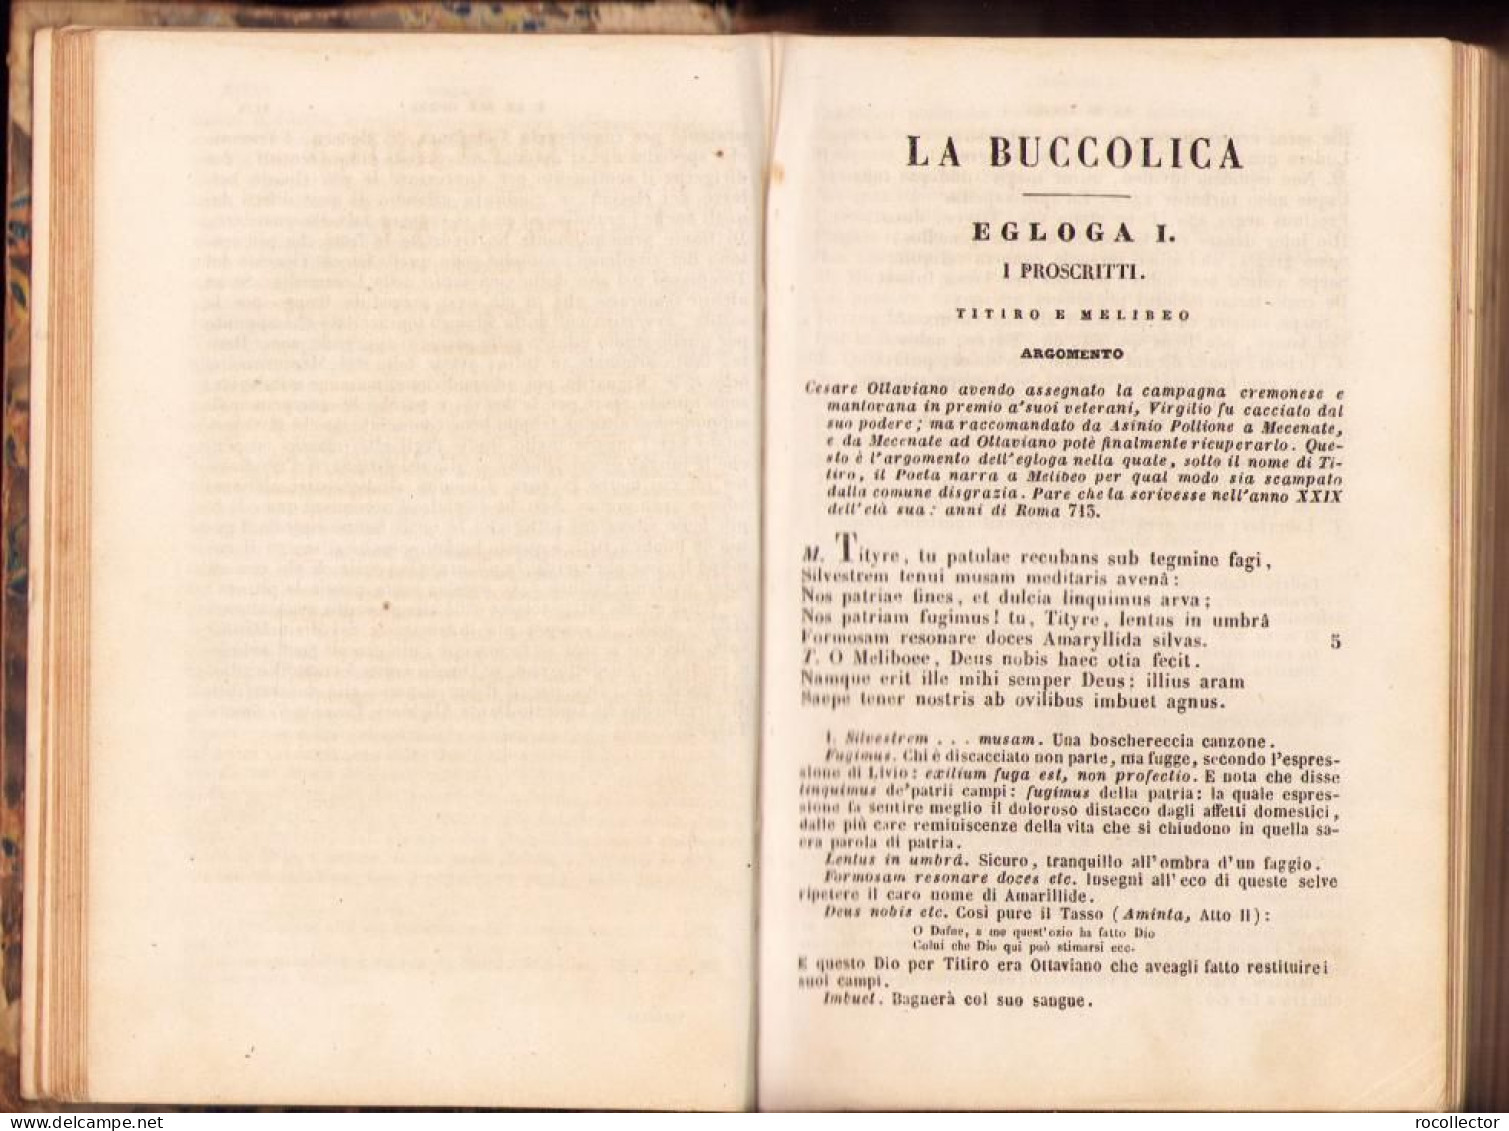 Opere Di P Virgilio Marone Con Note Italiane Di Giuseppe Arcangeli, 1866, Prato C2127 - Libri Vecchi E Da Collezione